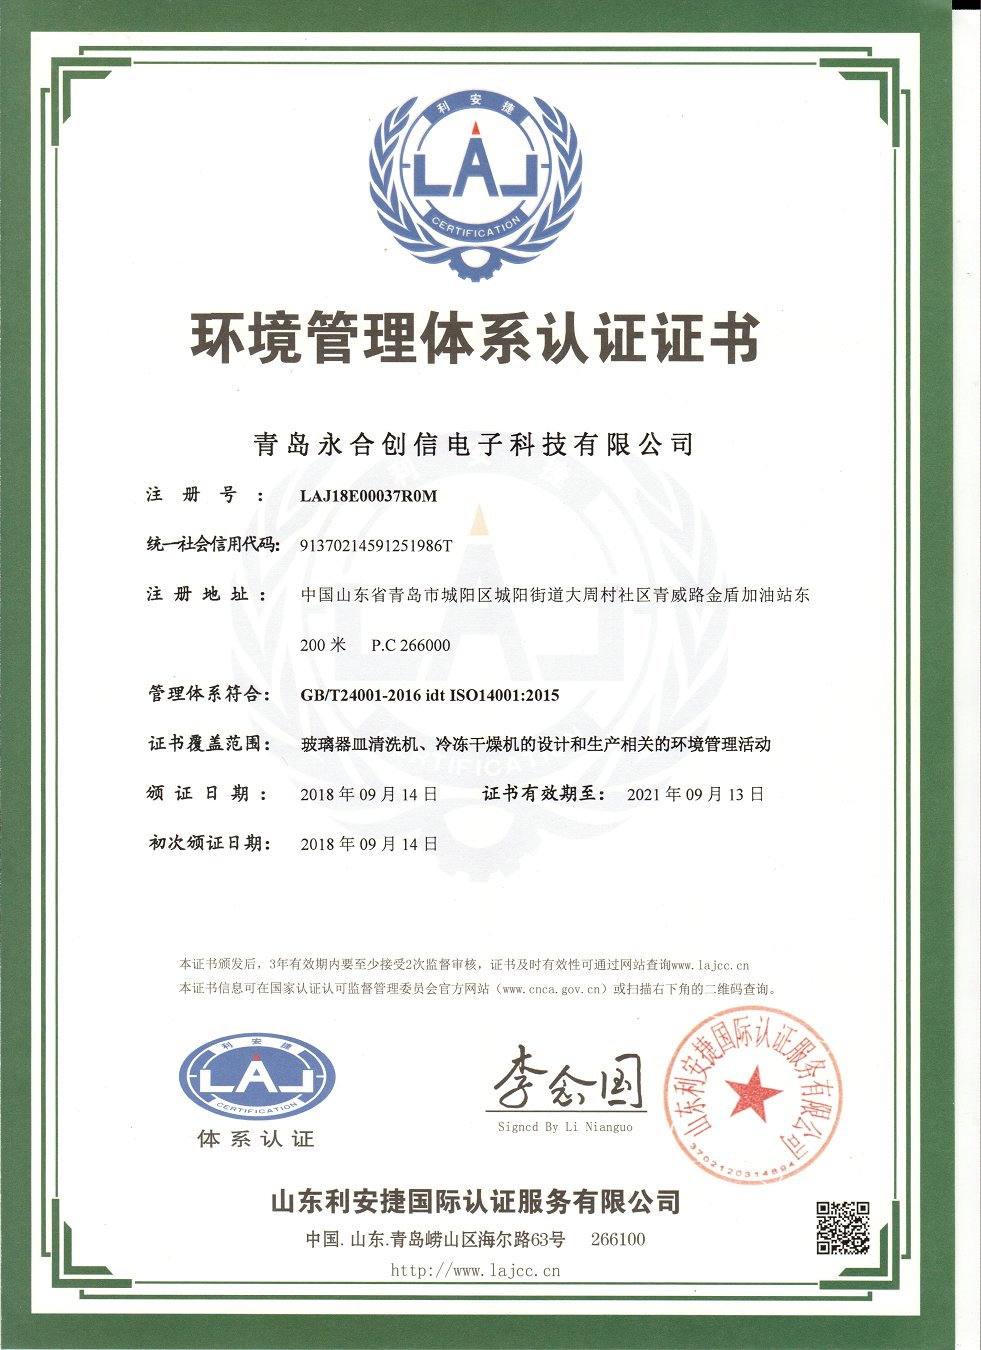 环境管理体系认证证书14001.jpg 环境管理体系认证证书14001 荣誉资质